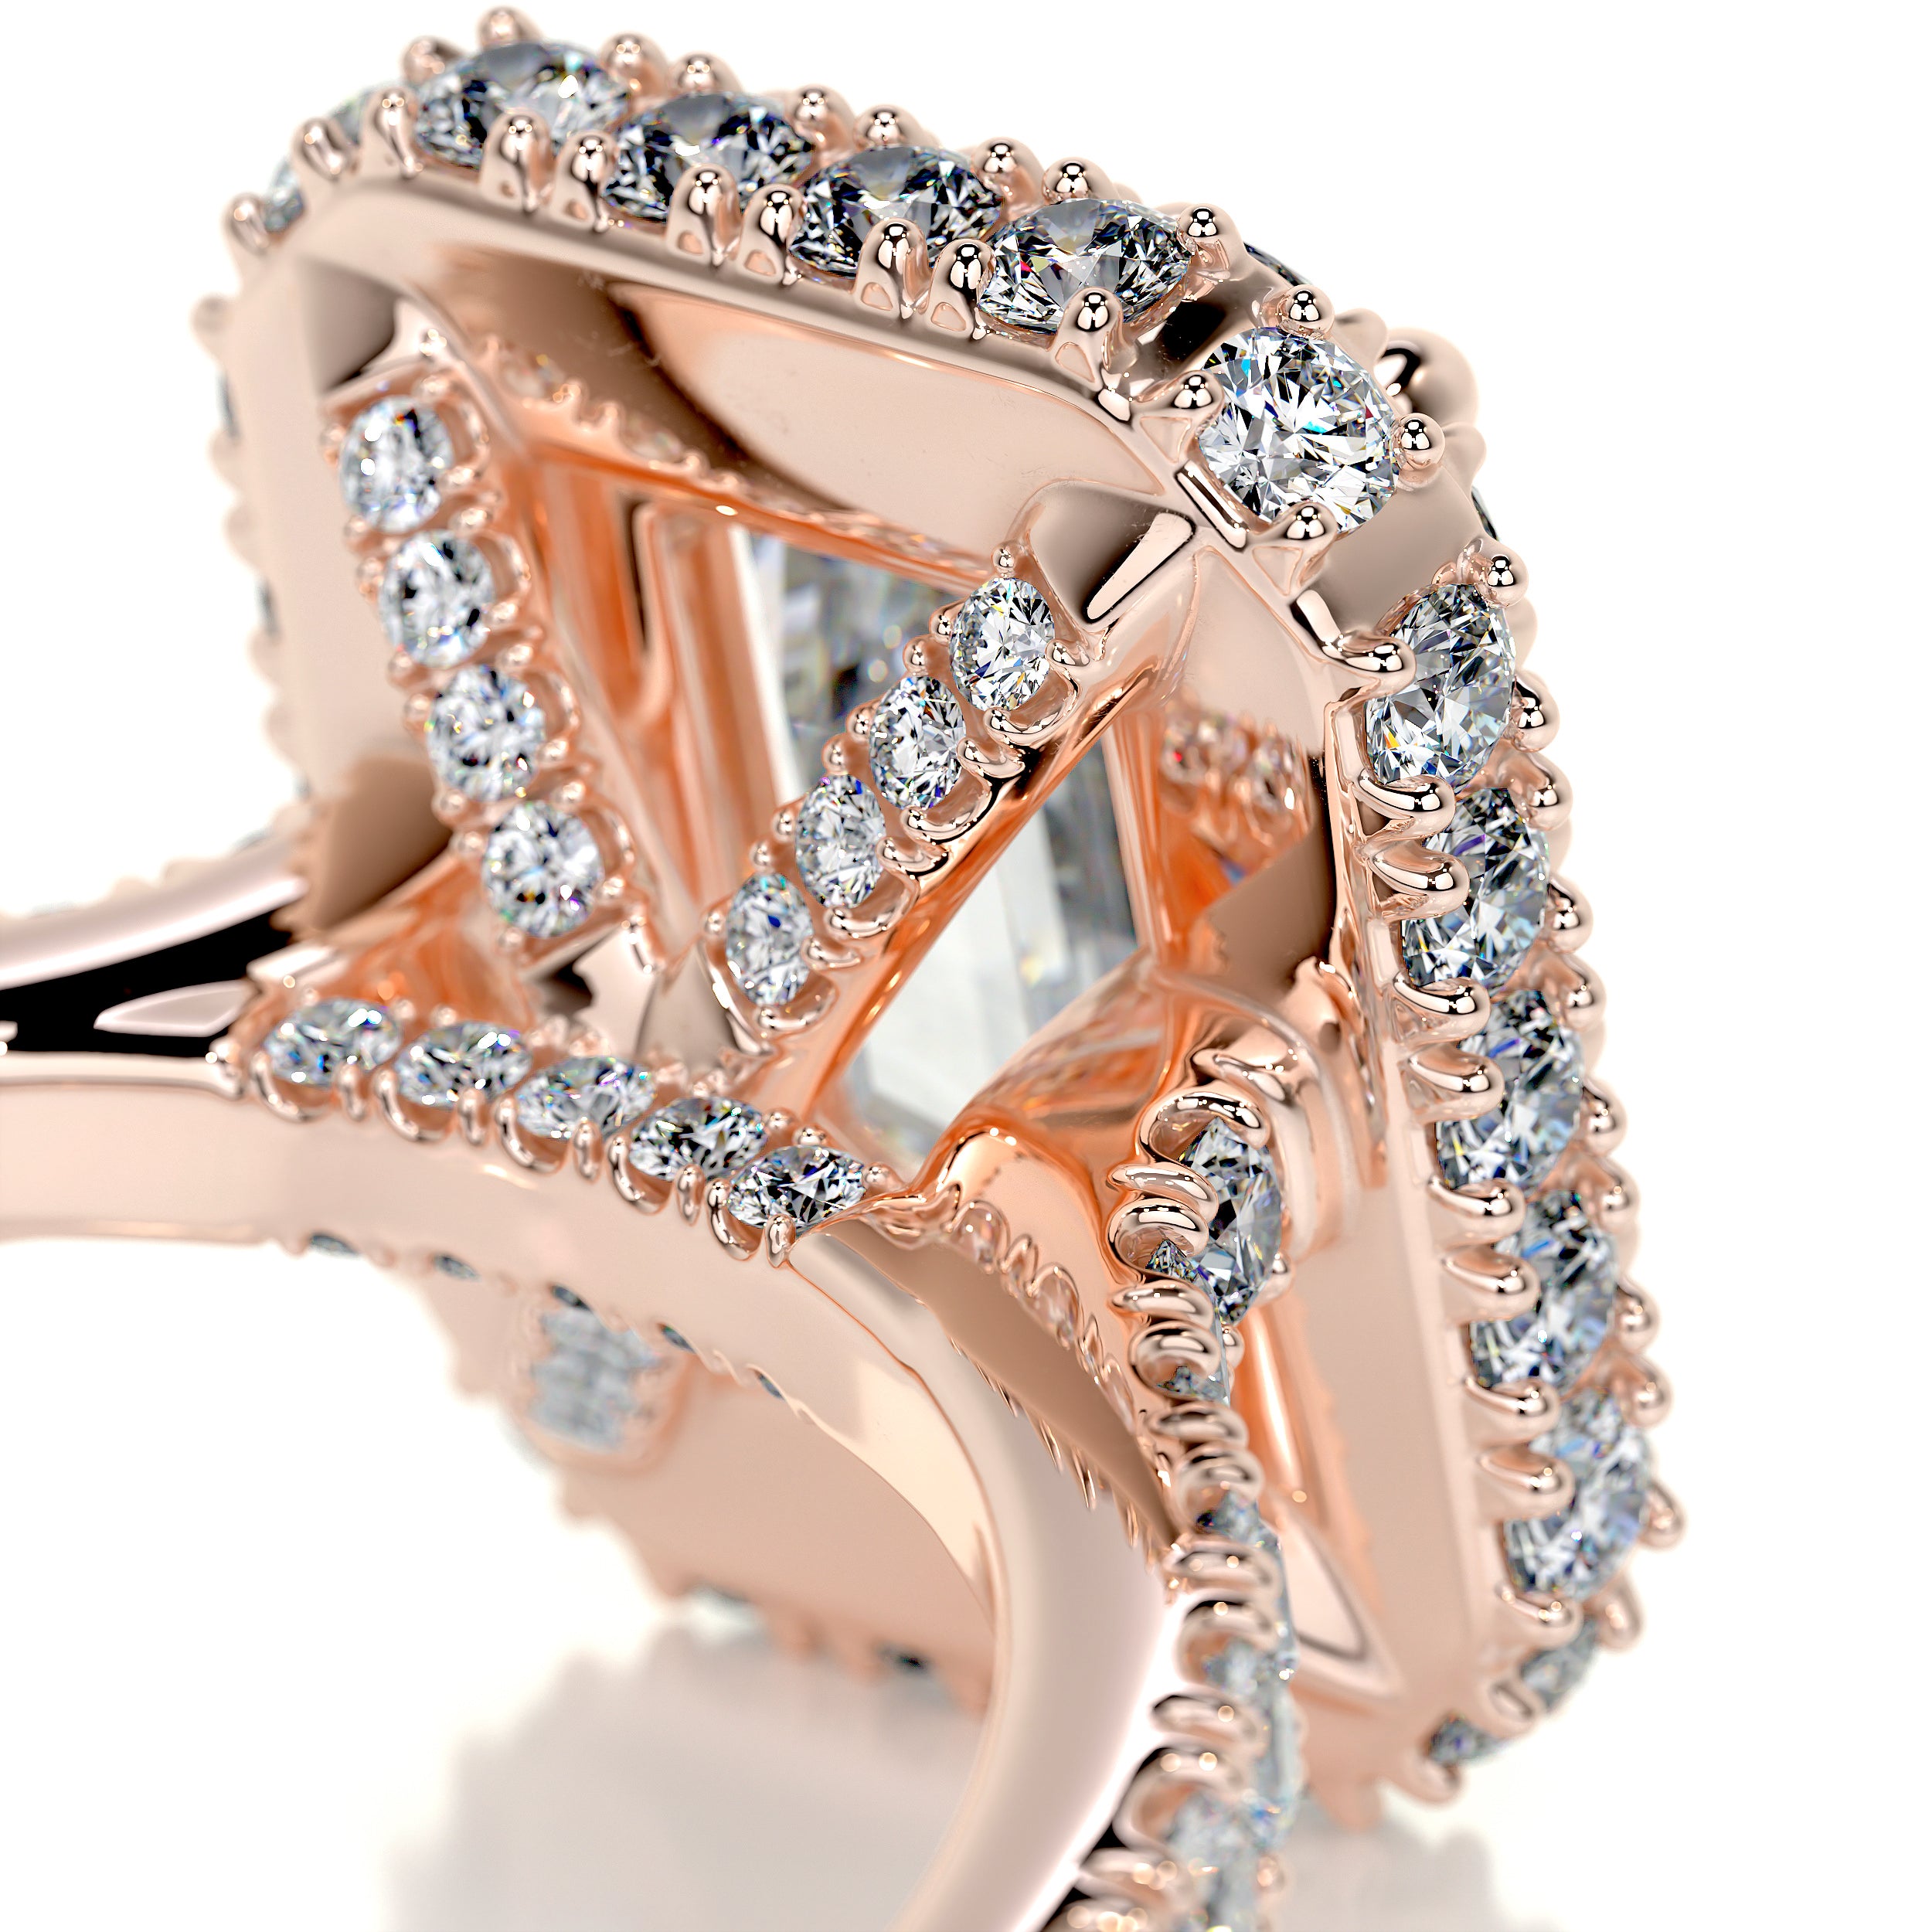 Lana Moissanite & Diamonds Ring -14K Rose Gold